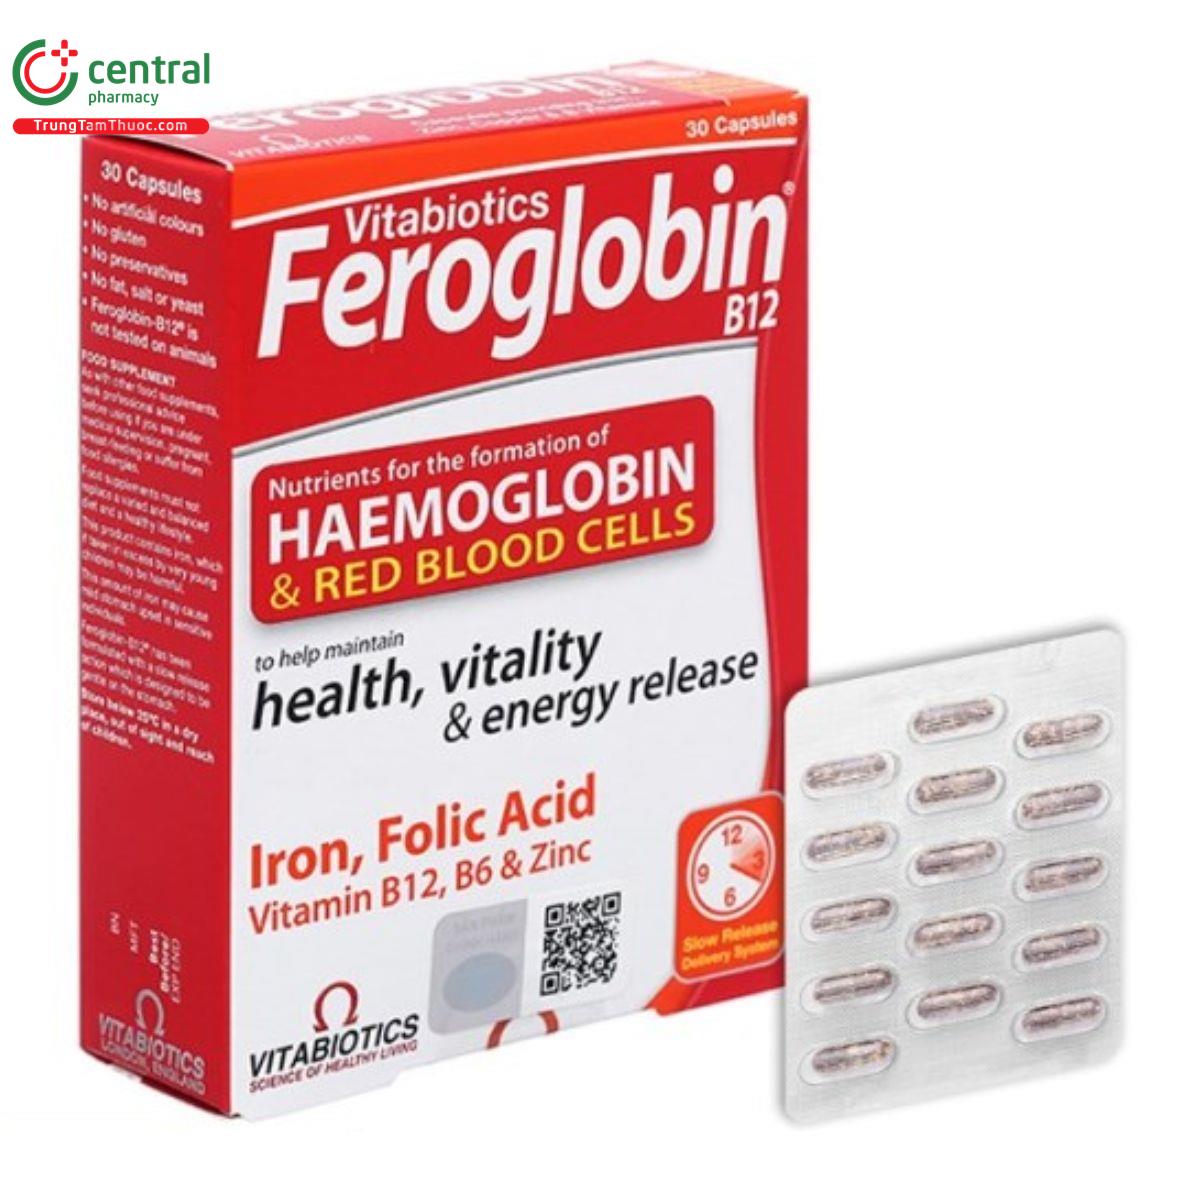 vitabiotics feroglobin b12 11 T8656